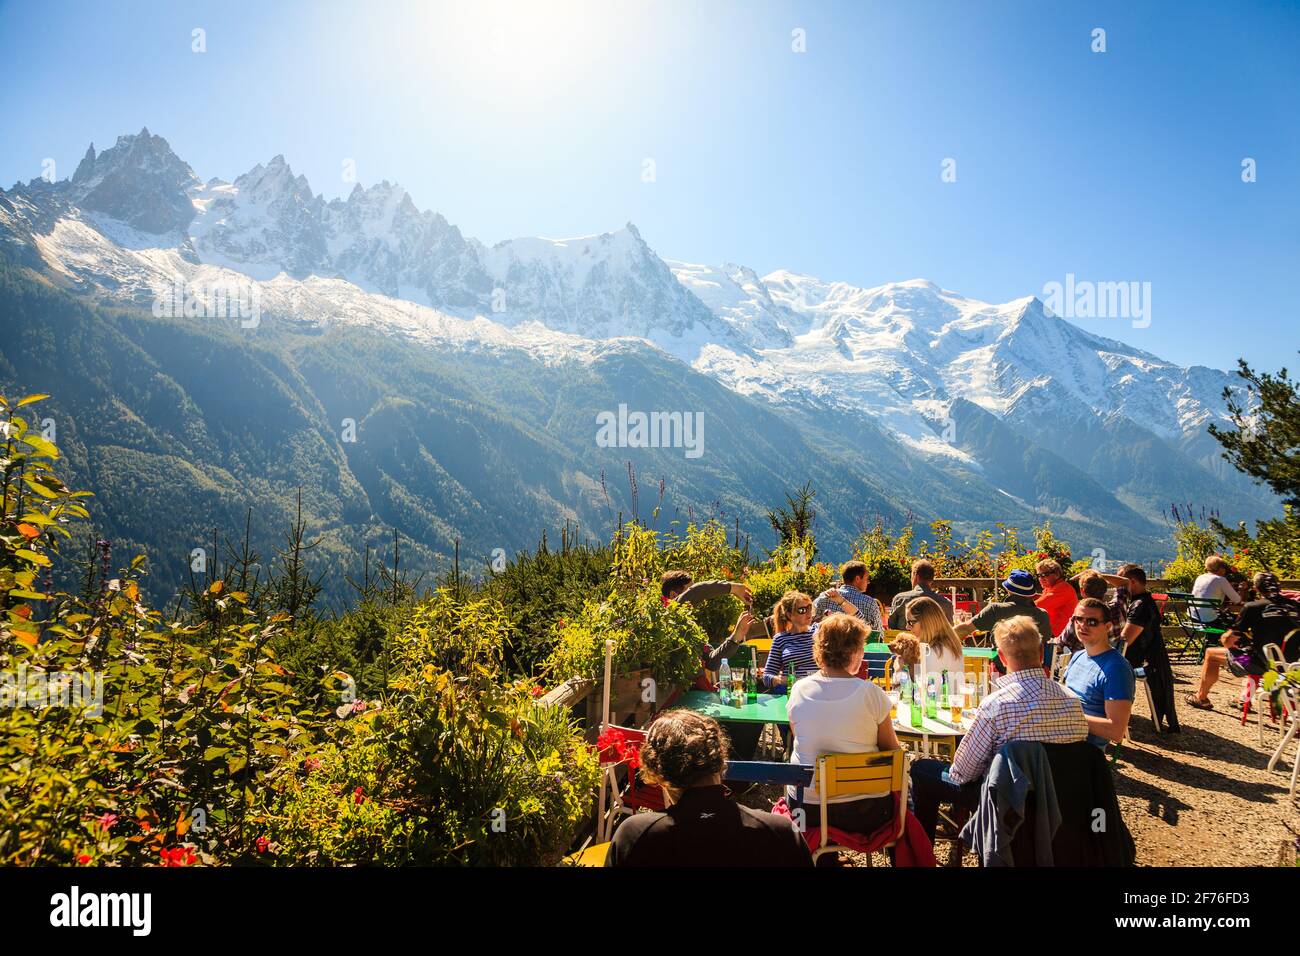 Chamonix, Frankreich, 25. September 2015: Ein Café im Freien auf einem Wanderweg mit einem malerischen Blick auf die französischen Alpen Stockfoto